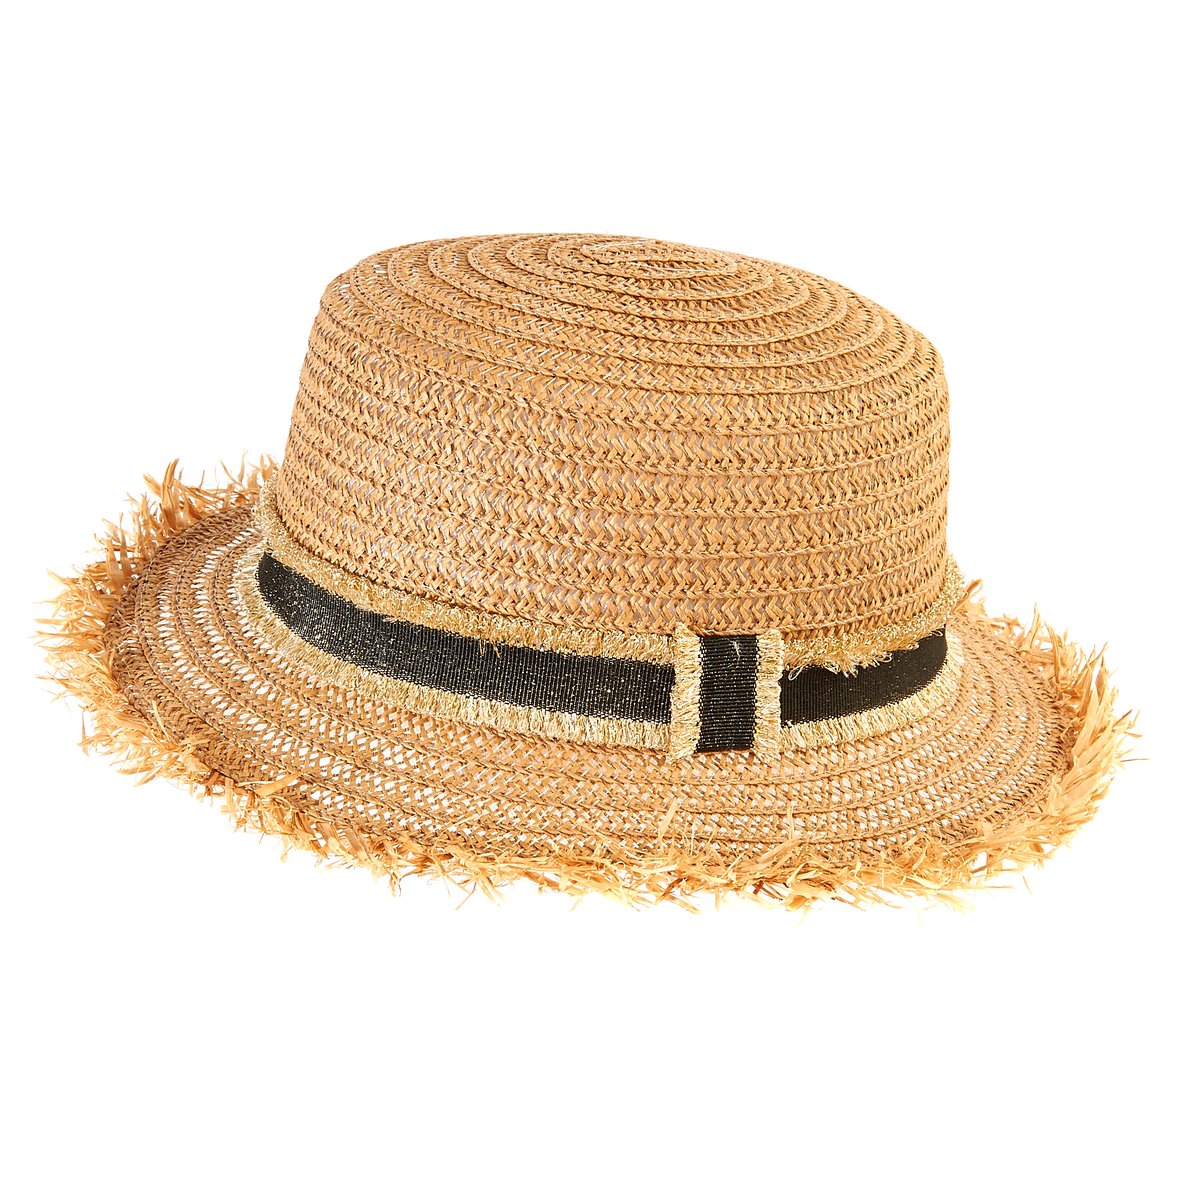 Цвет соломенной шляпы. Соломенная шляпа Джейн Эйр. Outventure шляпа соломенная. Черная соломенная шляпа Max Mara. Соломенная шляпа Hanna Anderson.